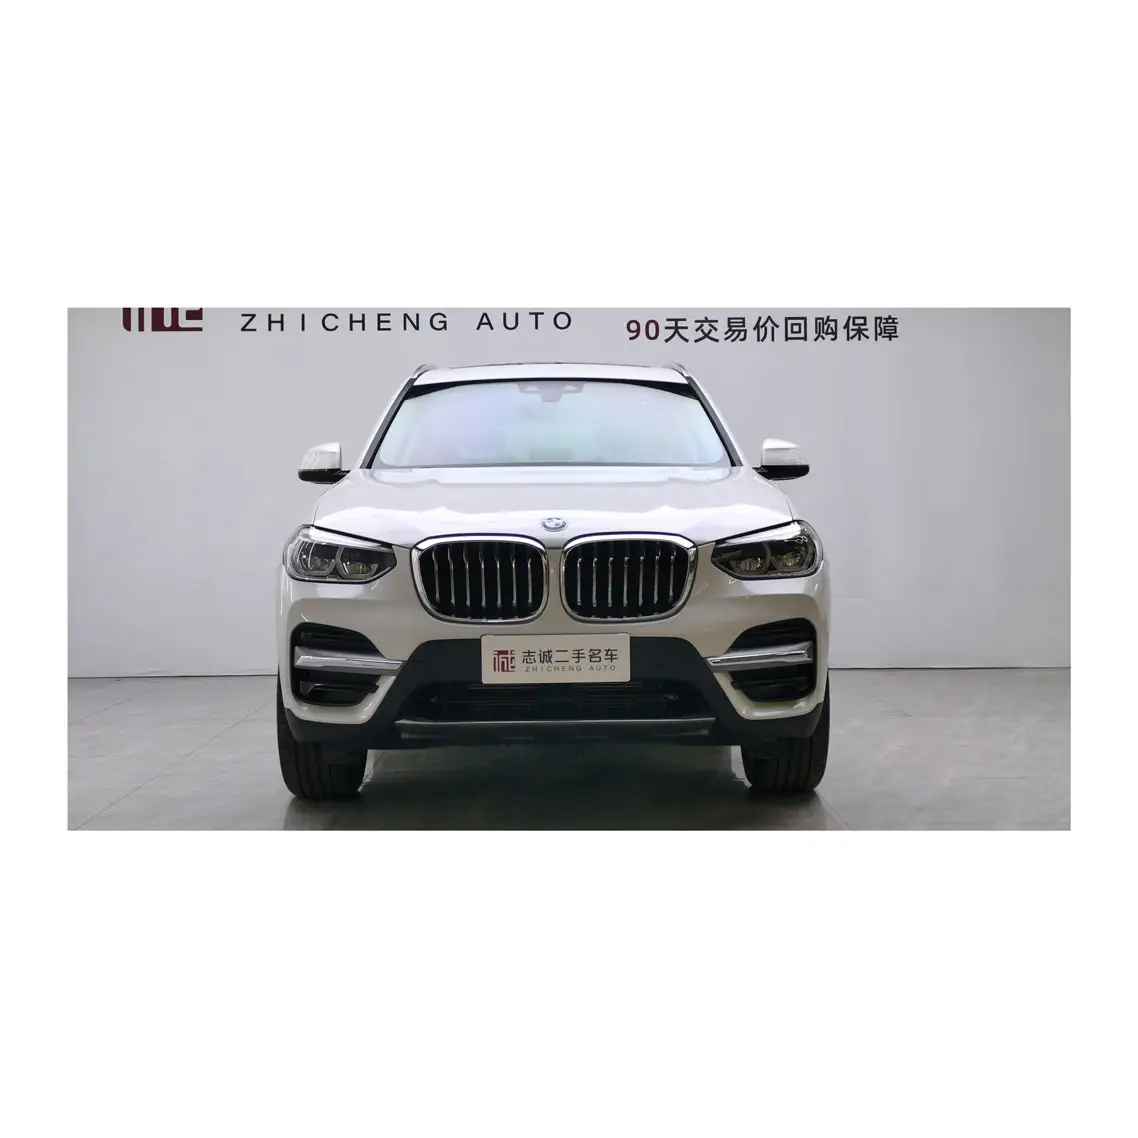 X3 BMW SUV มือสองรถหรู BMW X3 2021มือสองรถสปอร์ตอัตโนมัติ AWD